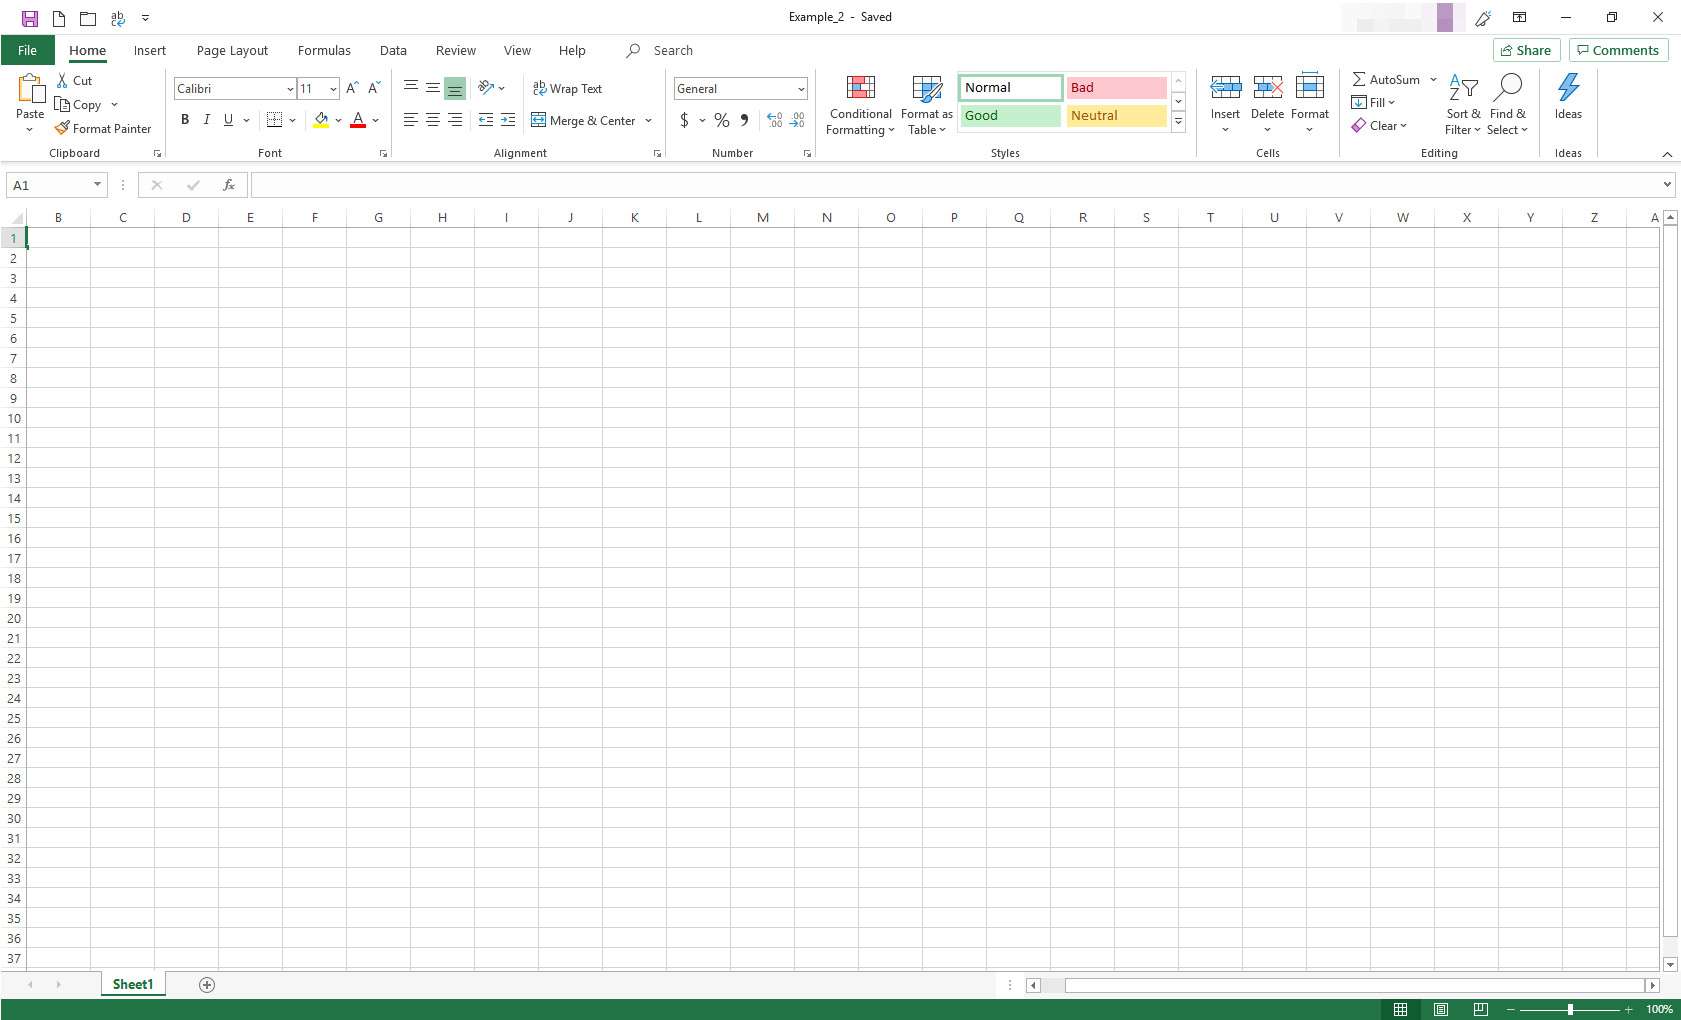 Excel-kalkylblad med rad- och kolumngränser tillämpade